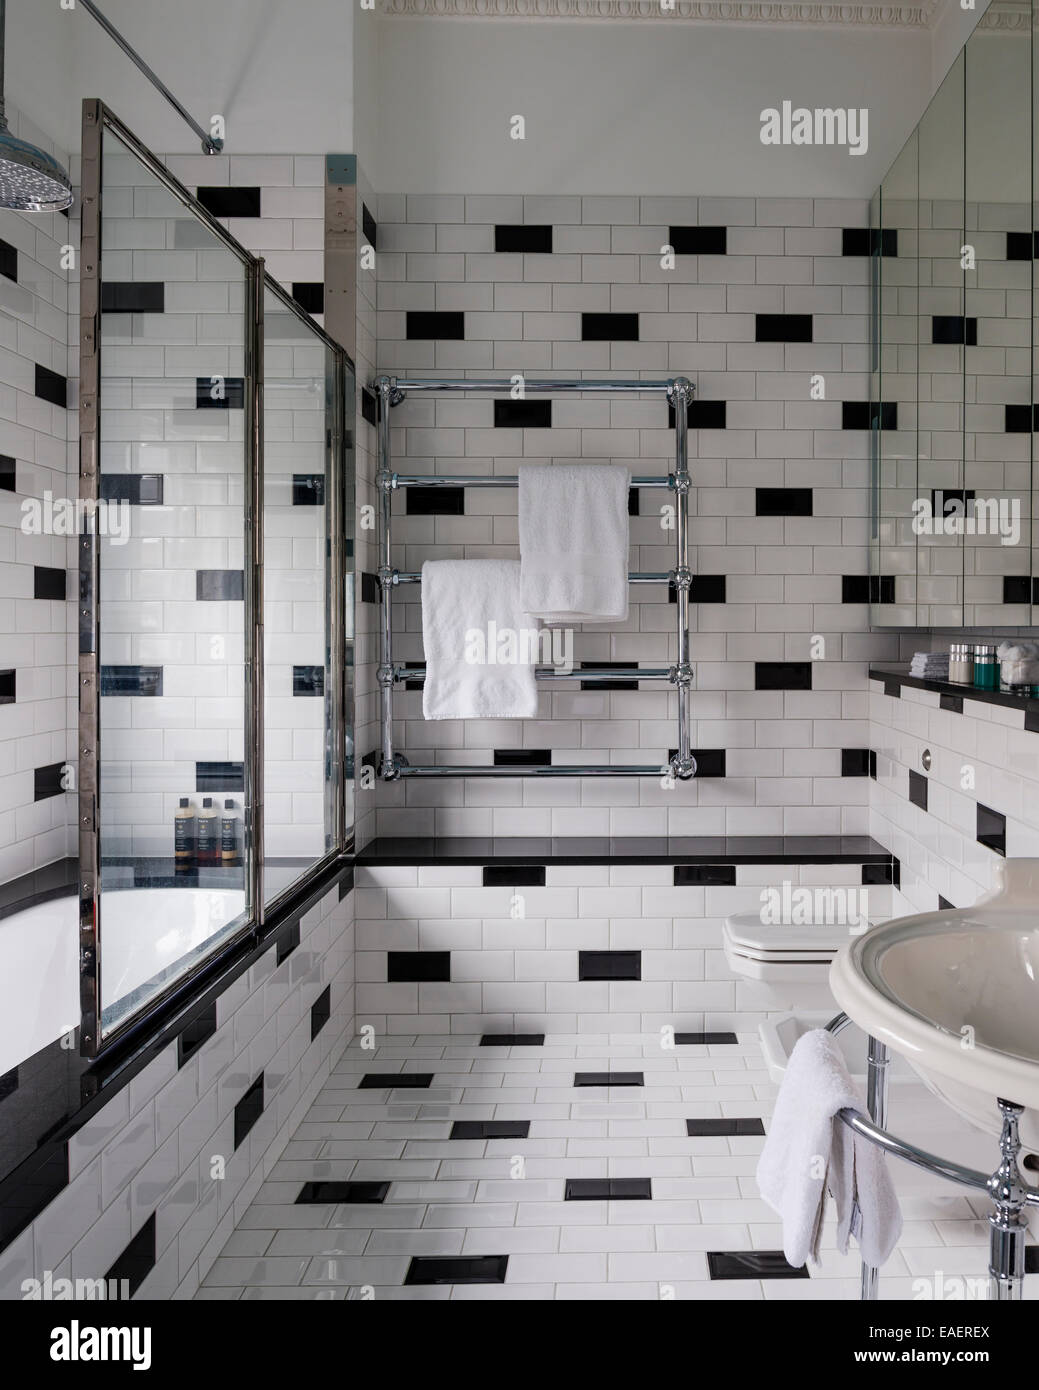 Salle de bains de style années 40, à partir de Drummonds avec brique noir et blanc carreaux formation Banque D'Images